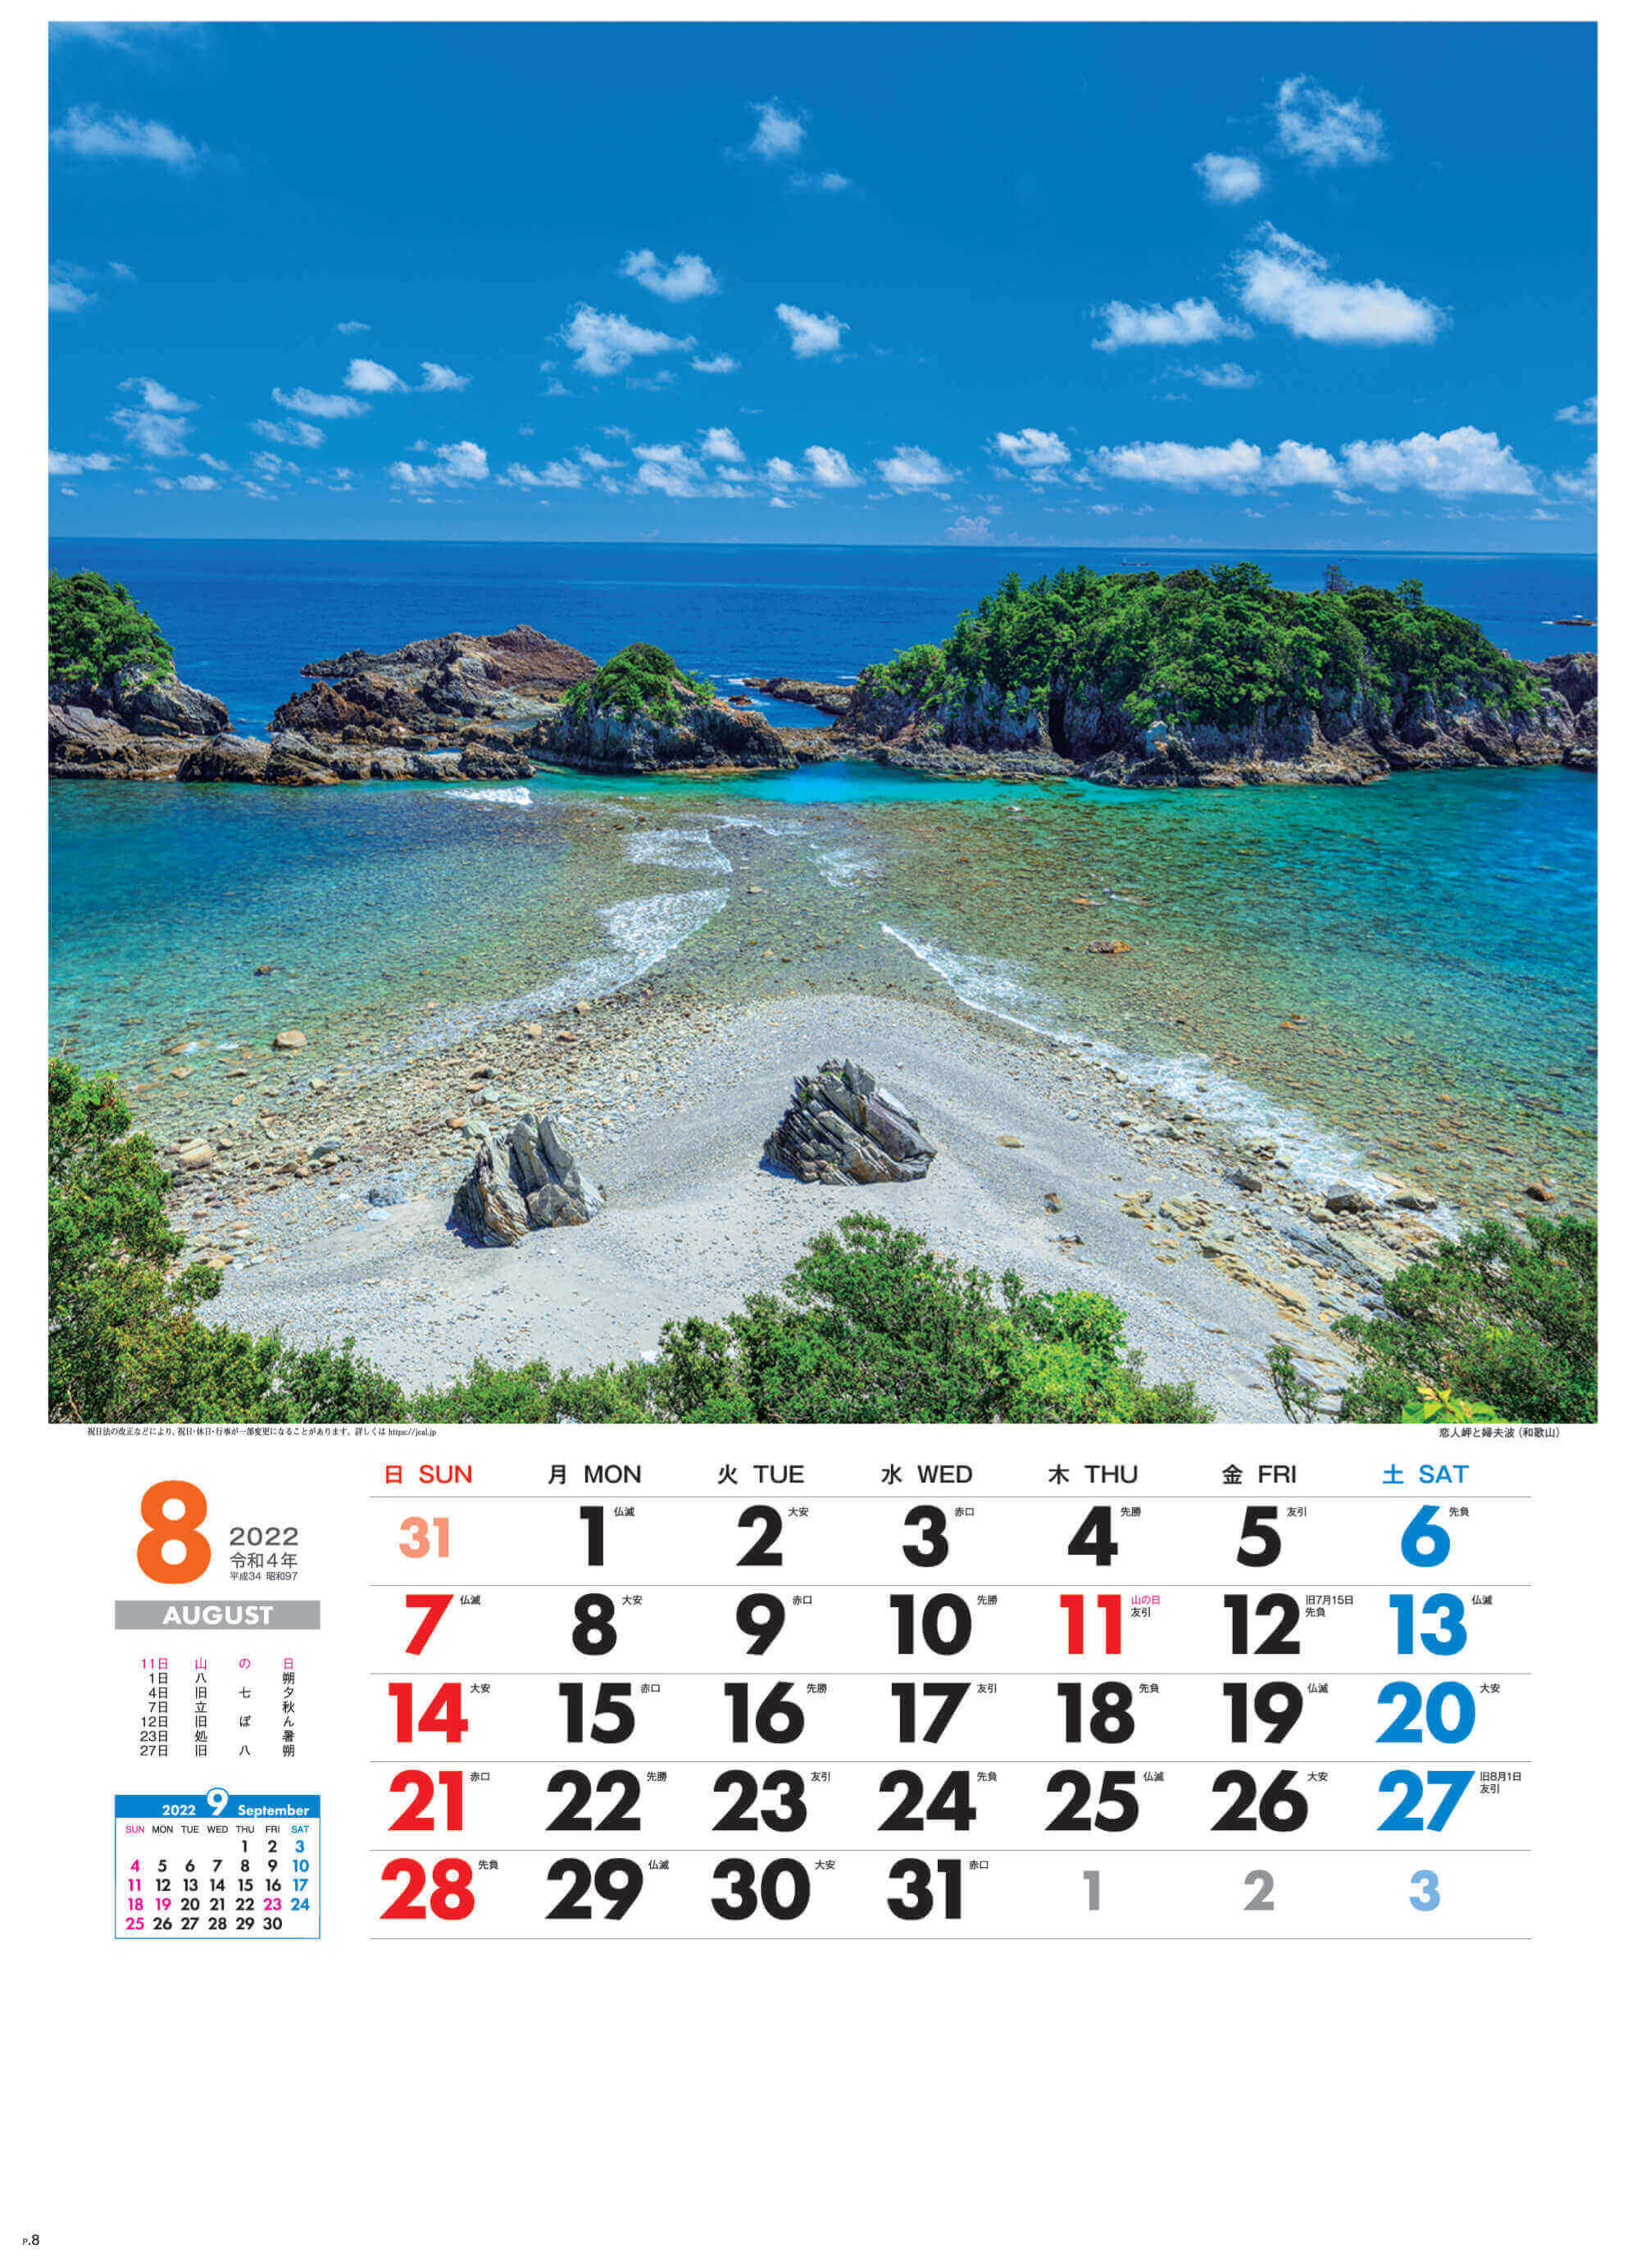 8月 恋人岬と婦夫波(和歌山) 美しき日本 2022年カレンダーの画像